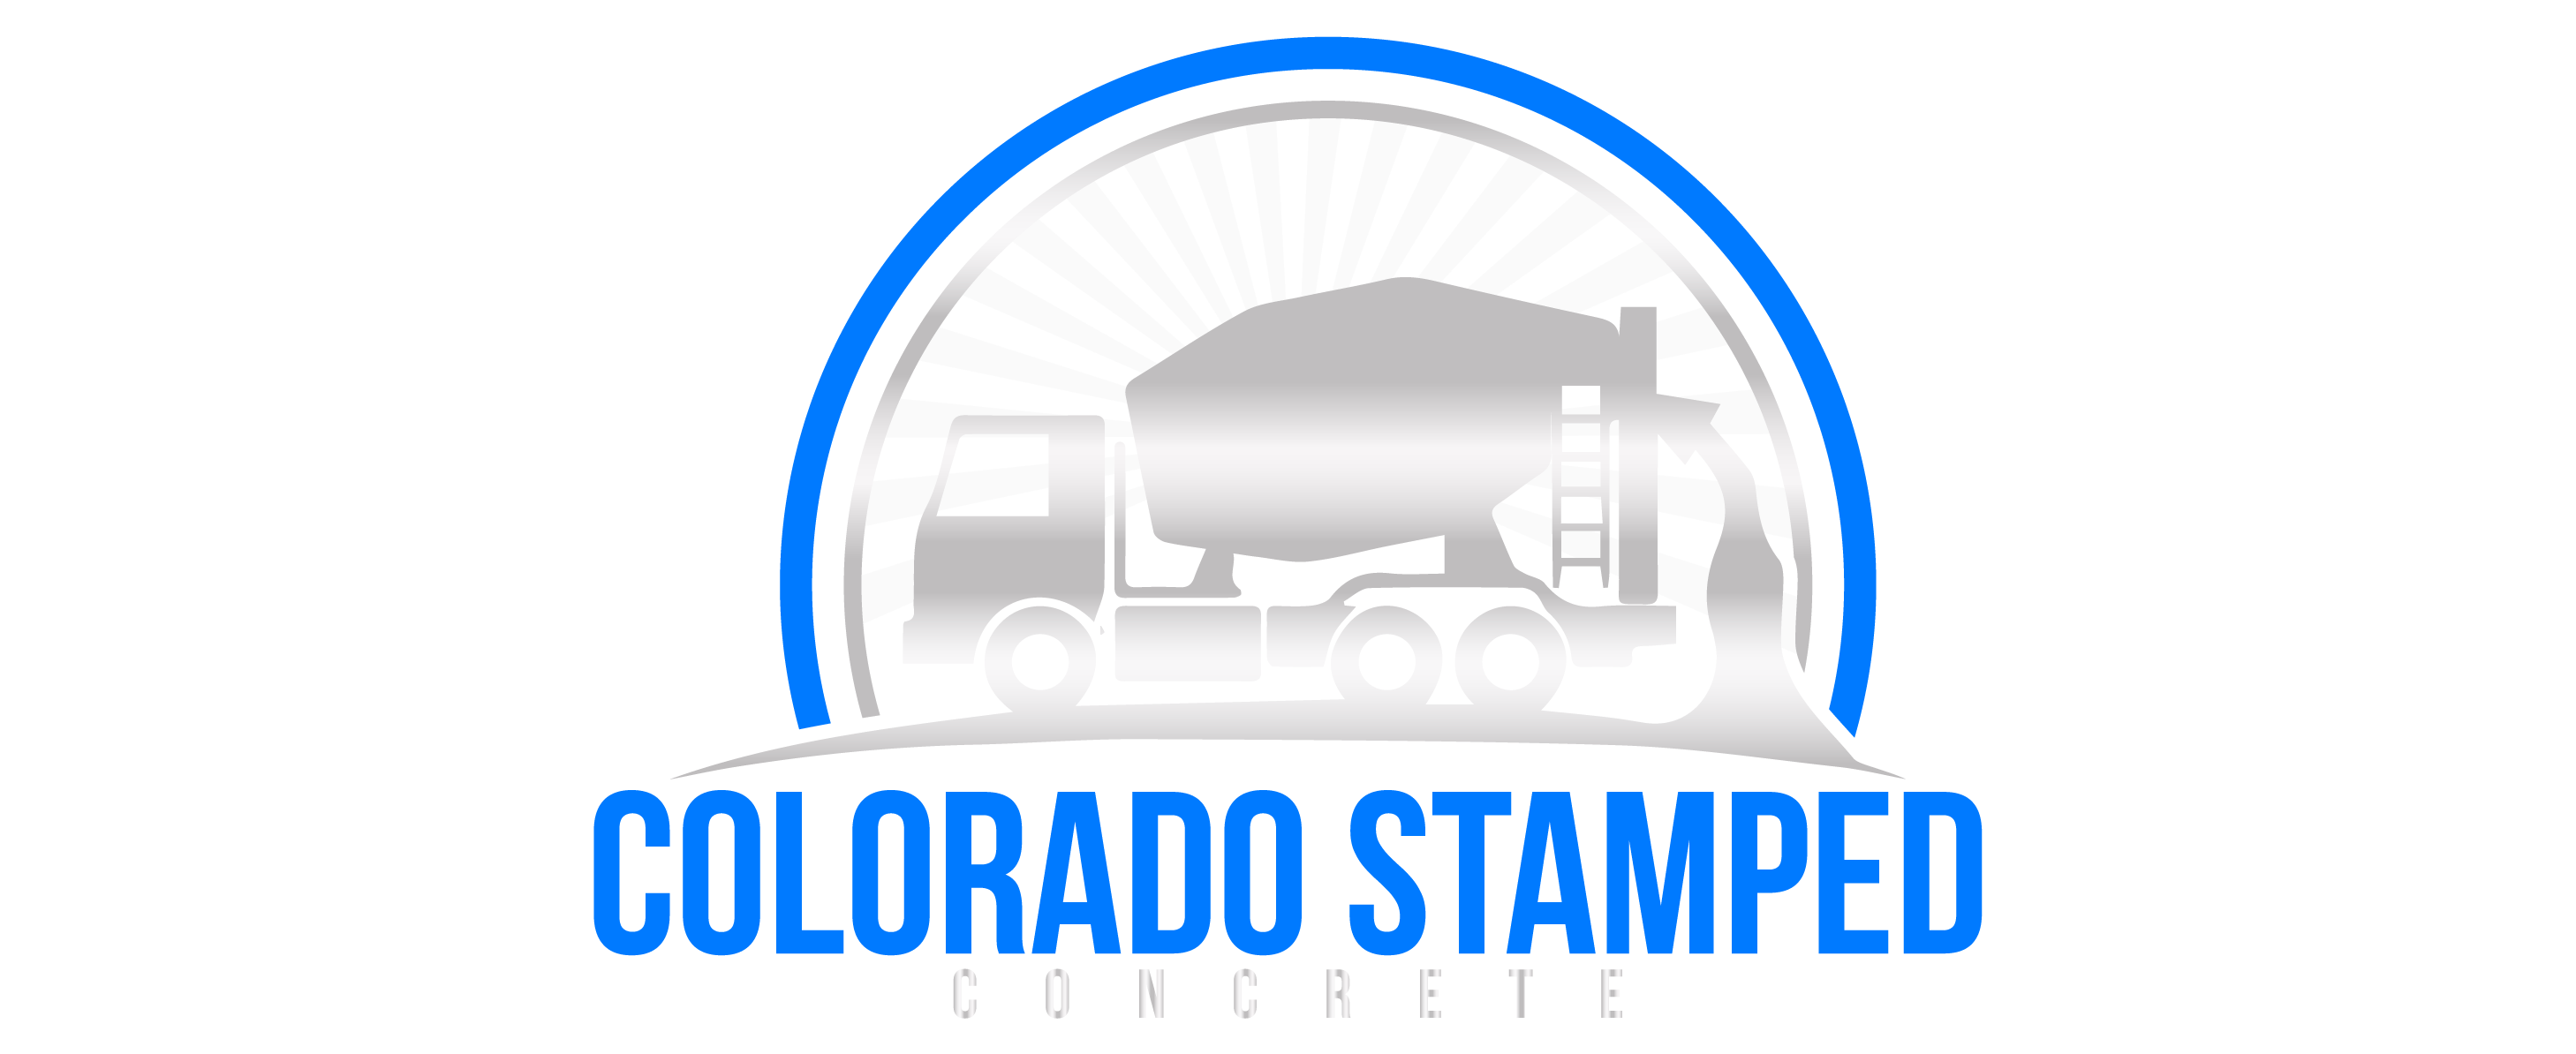 Colorado Stamped Concrete Custom Outdoor Living Contractors